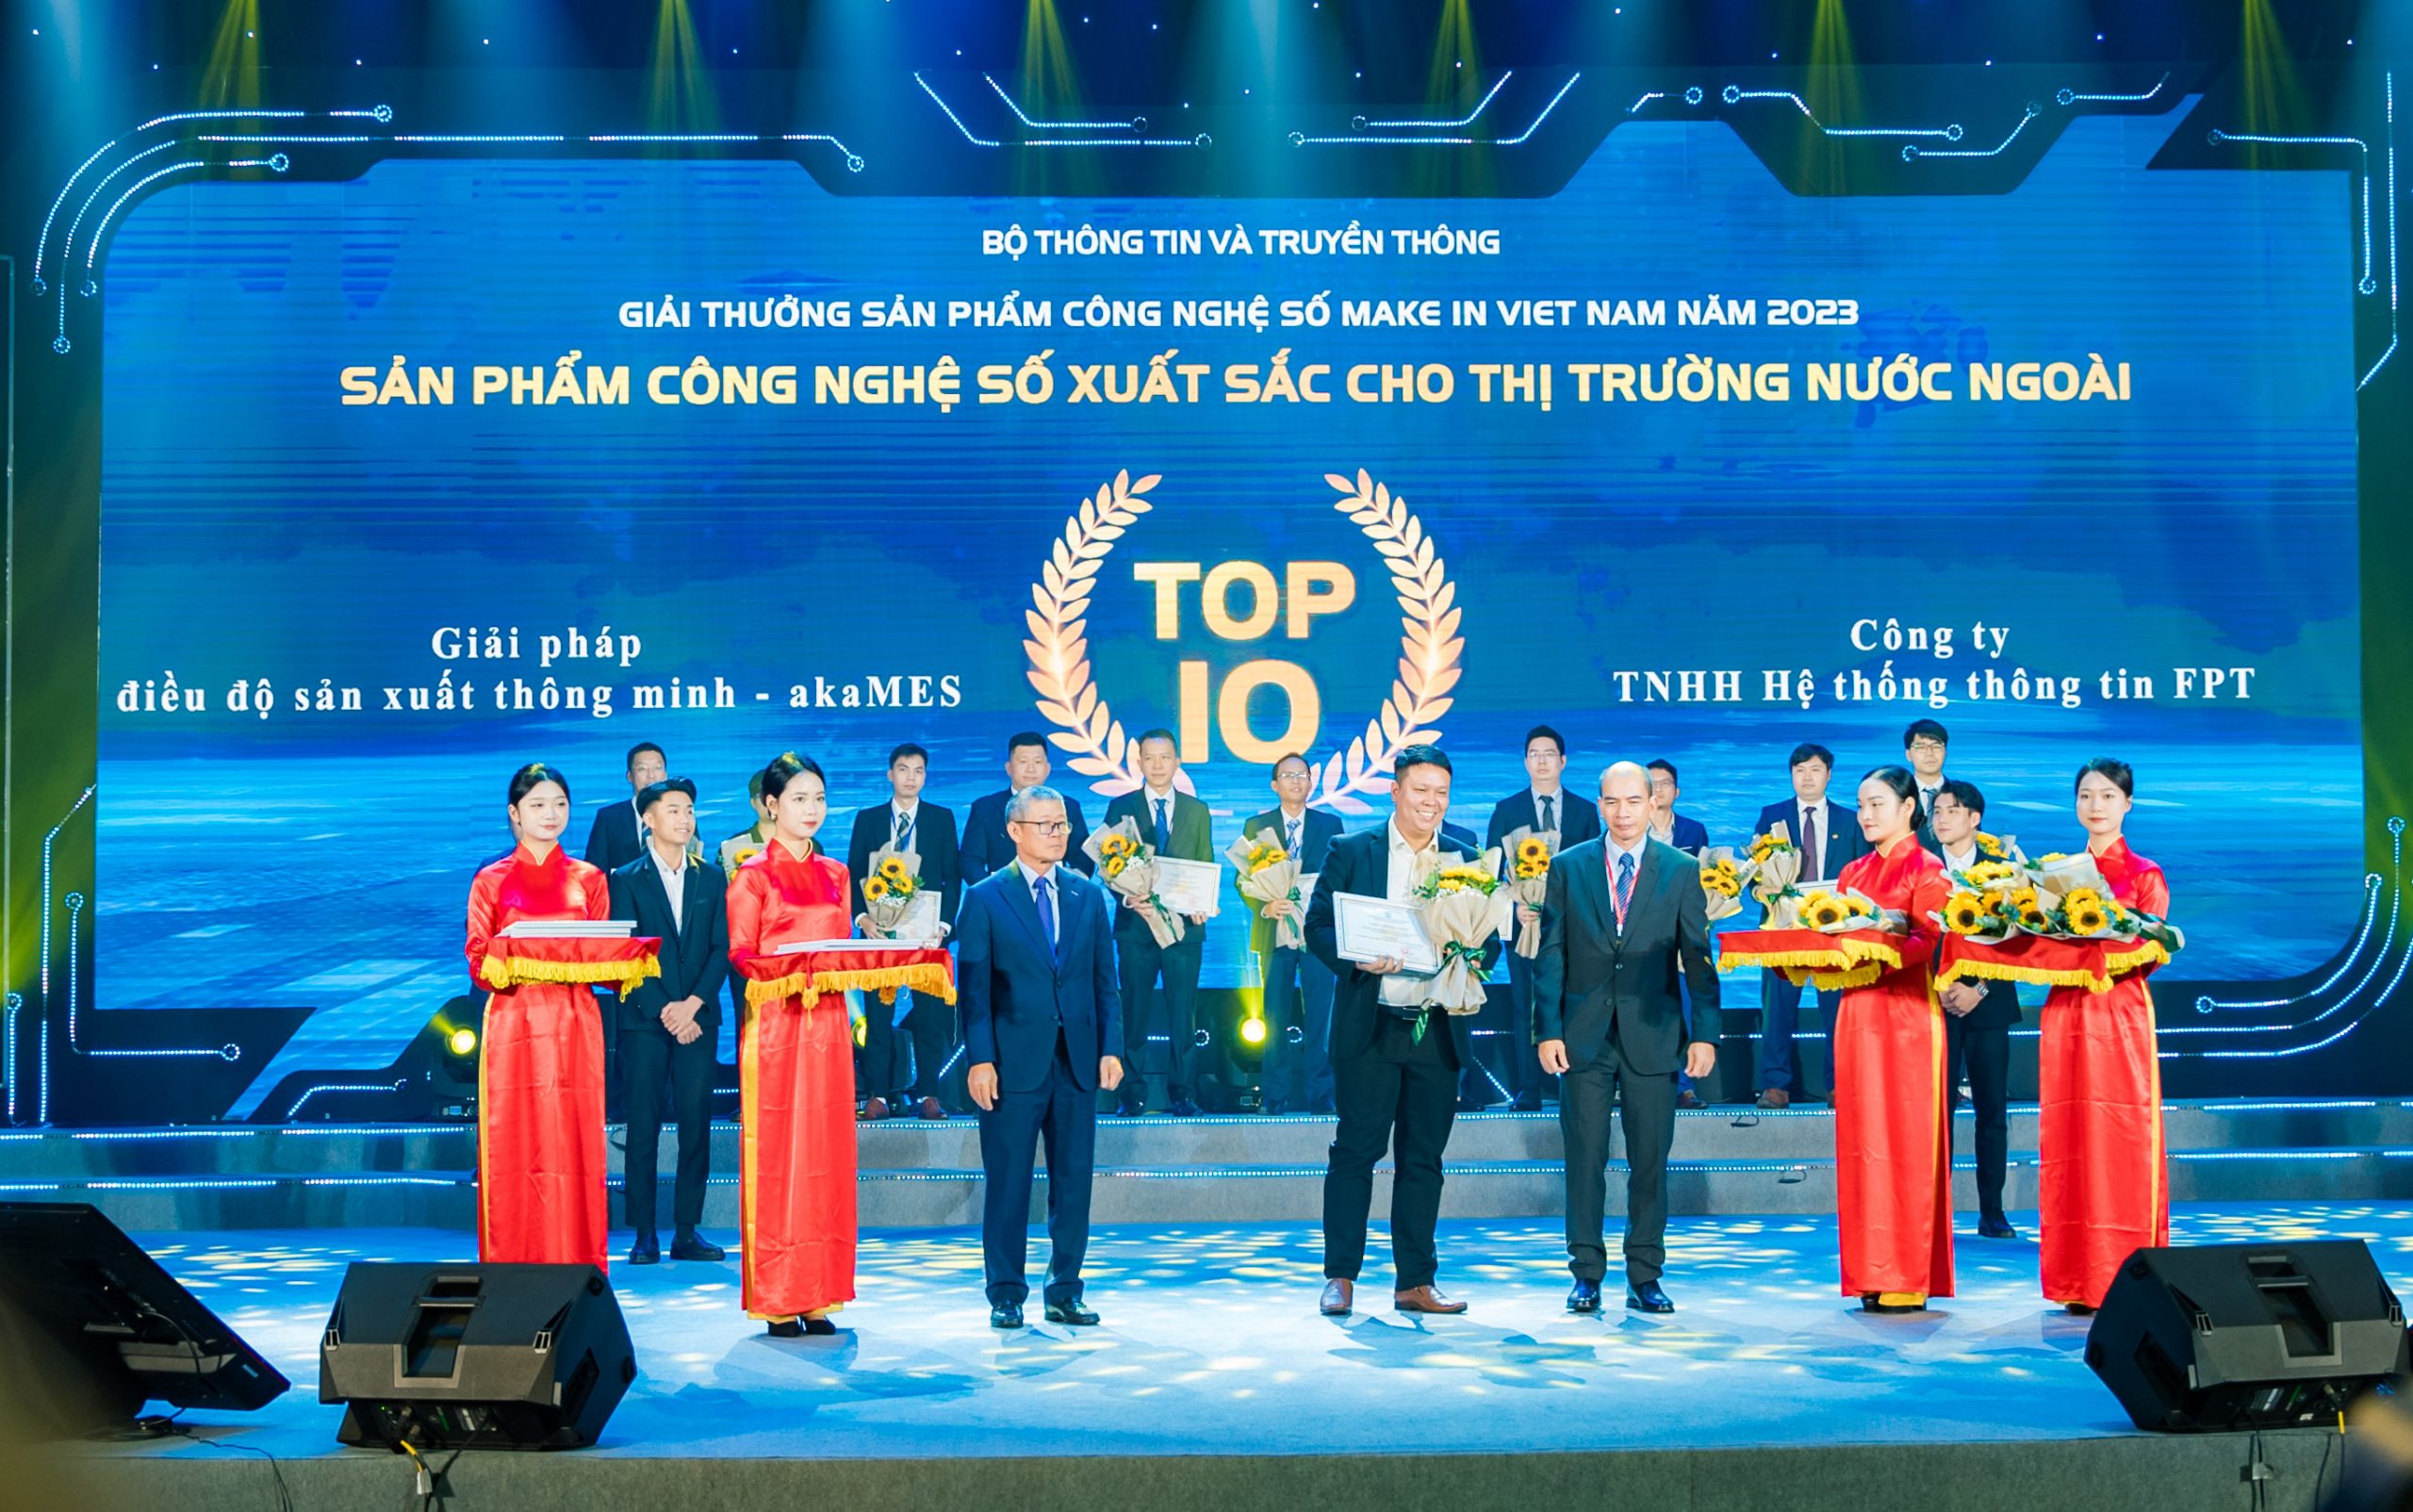 Giải pháp điều độ sản xuất thông minh – akaMES đạt Top 10 Sản phẩm công nghệ số xuất sắc cho thị trường nước ngoài – Giải thưởng Sản phẩm công nghệ số Make in Viet Nam 2023